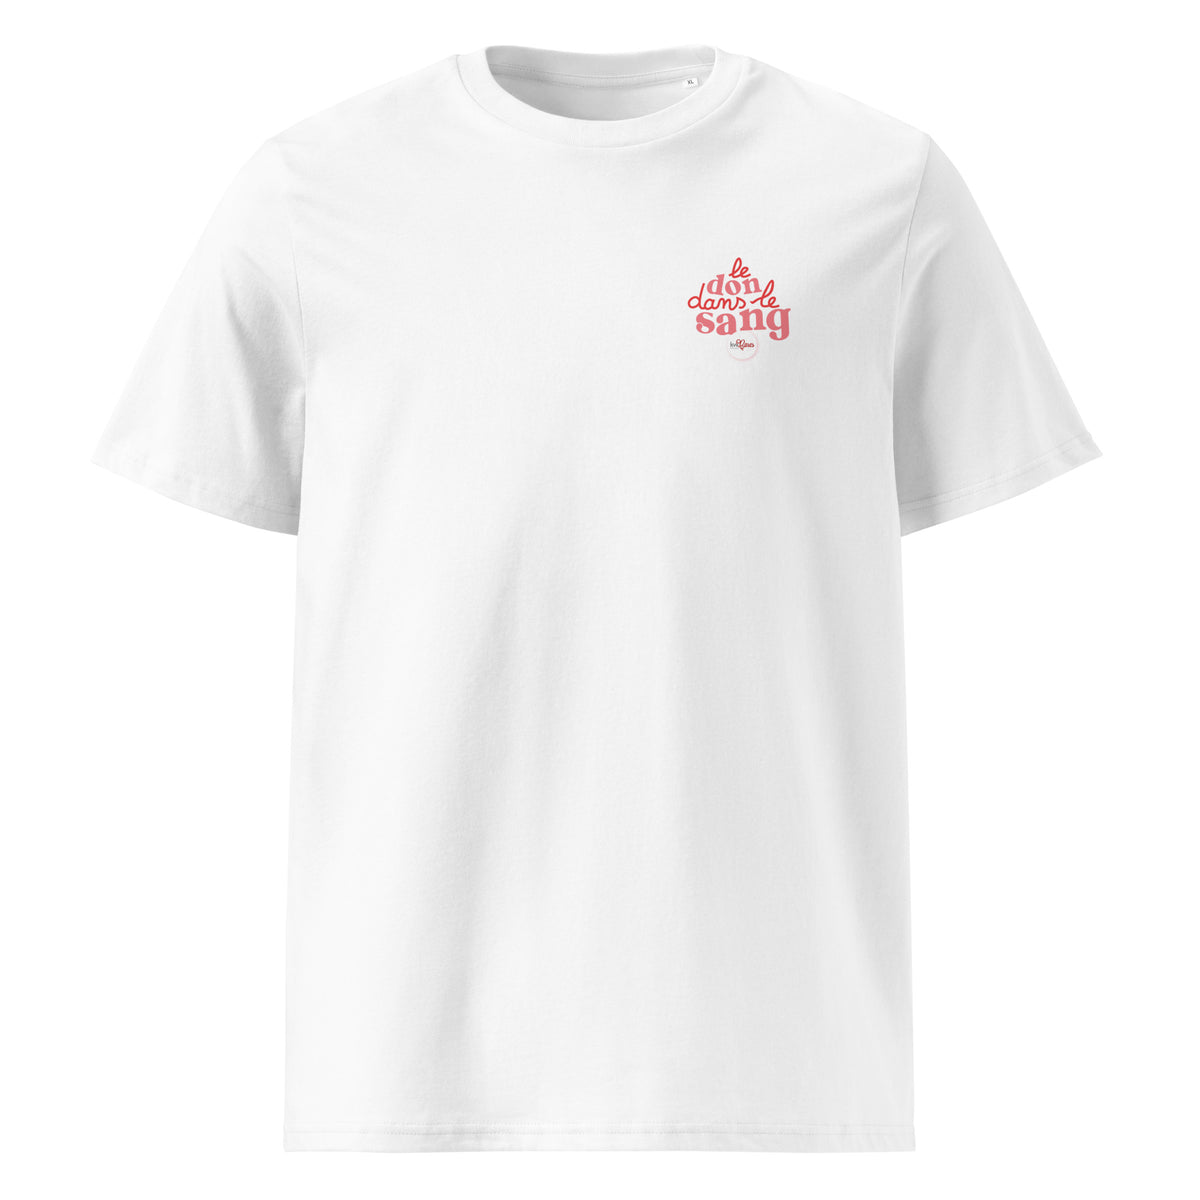 T-Shirt Premium Unisexe - KW France Cares - Le Don dans le Sang